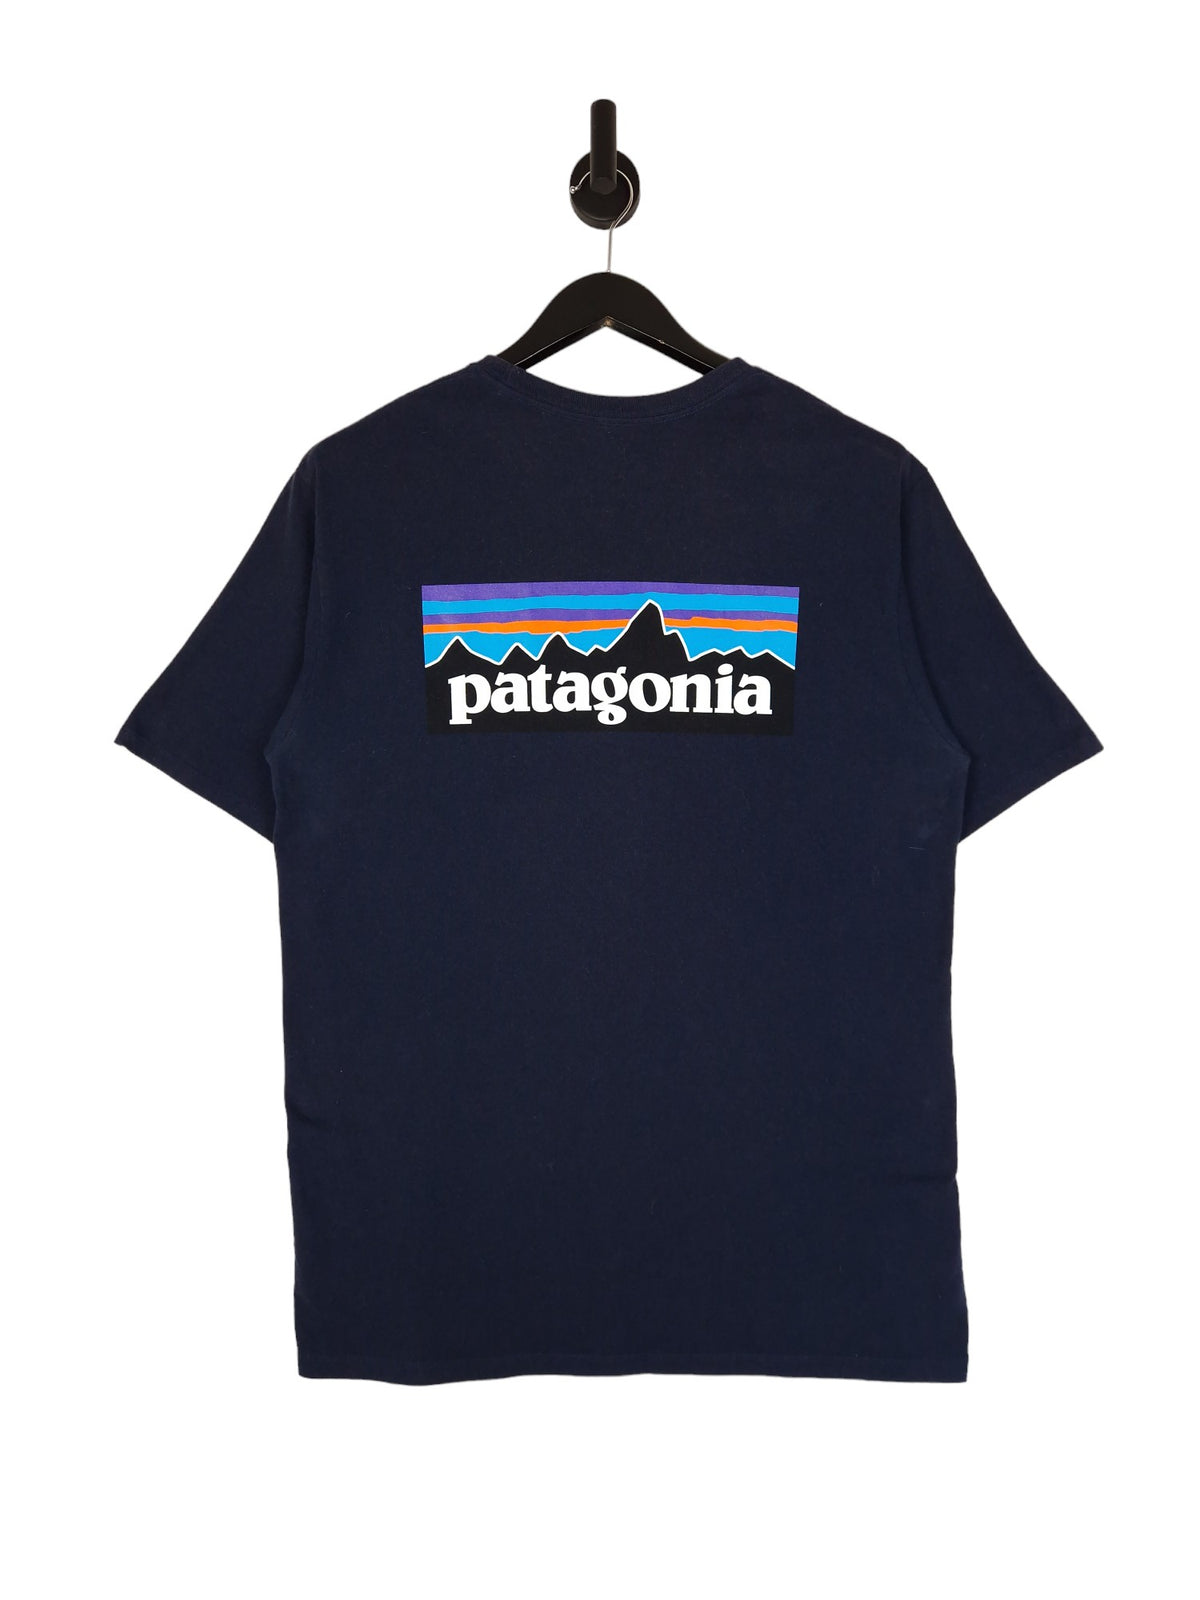 Patagonia Rear Logo T-Shirt - Size Medium